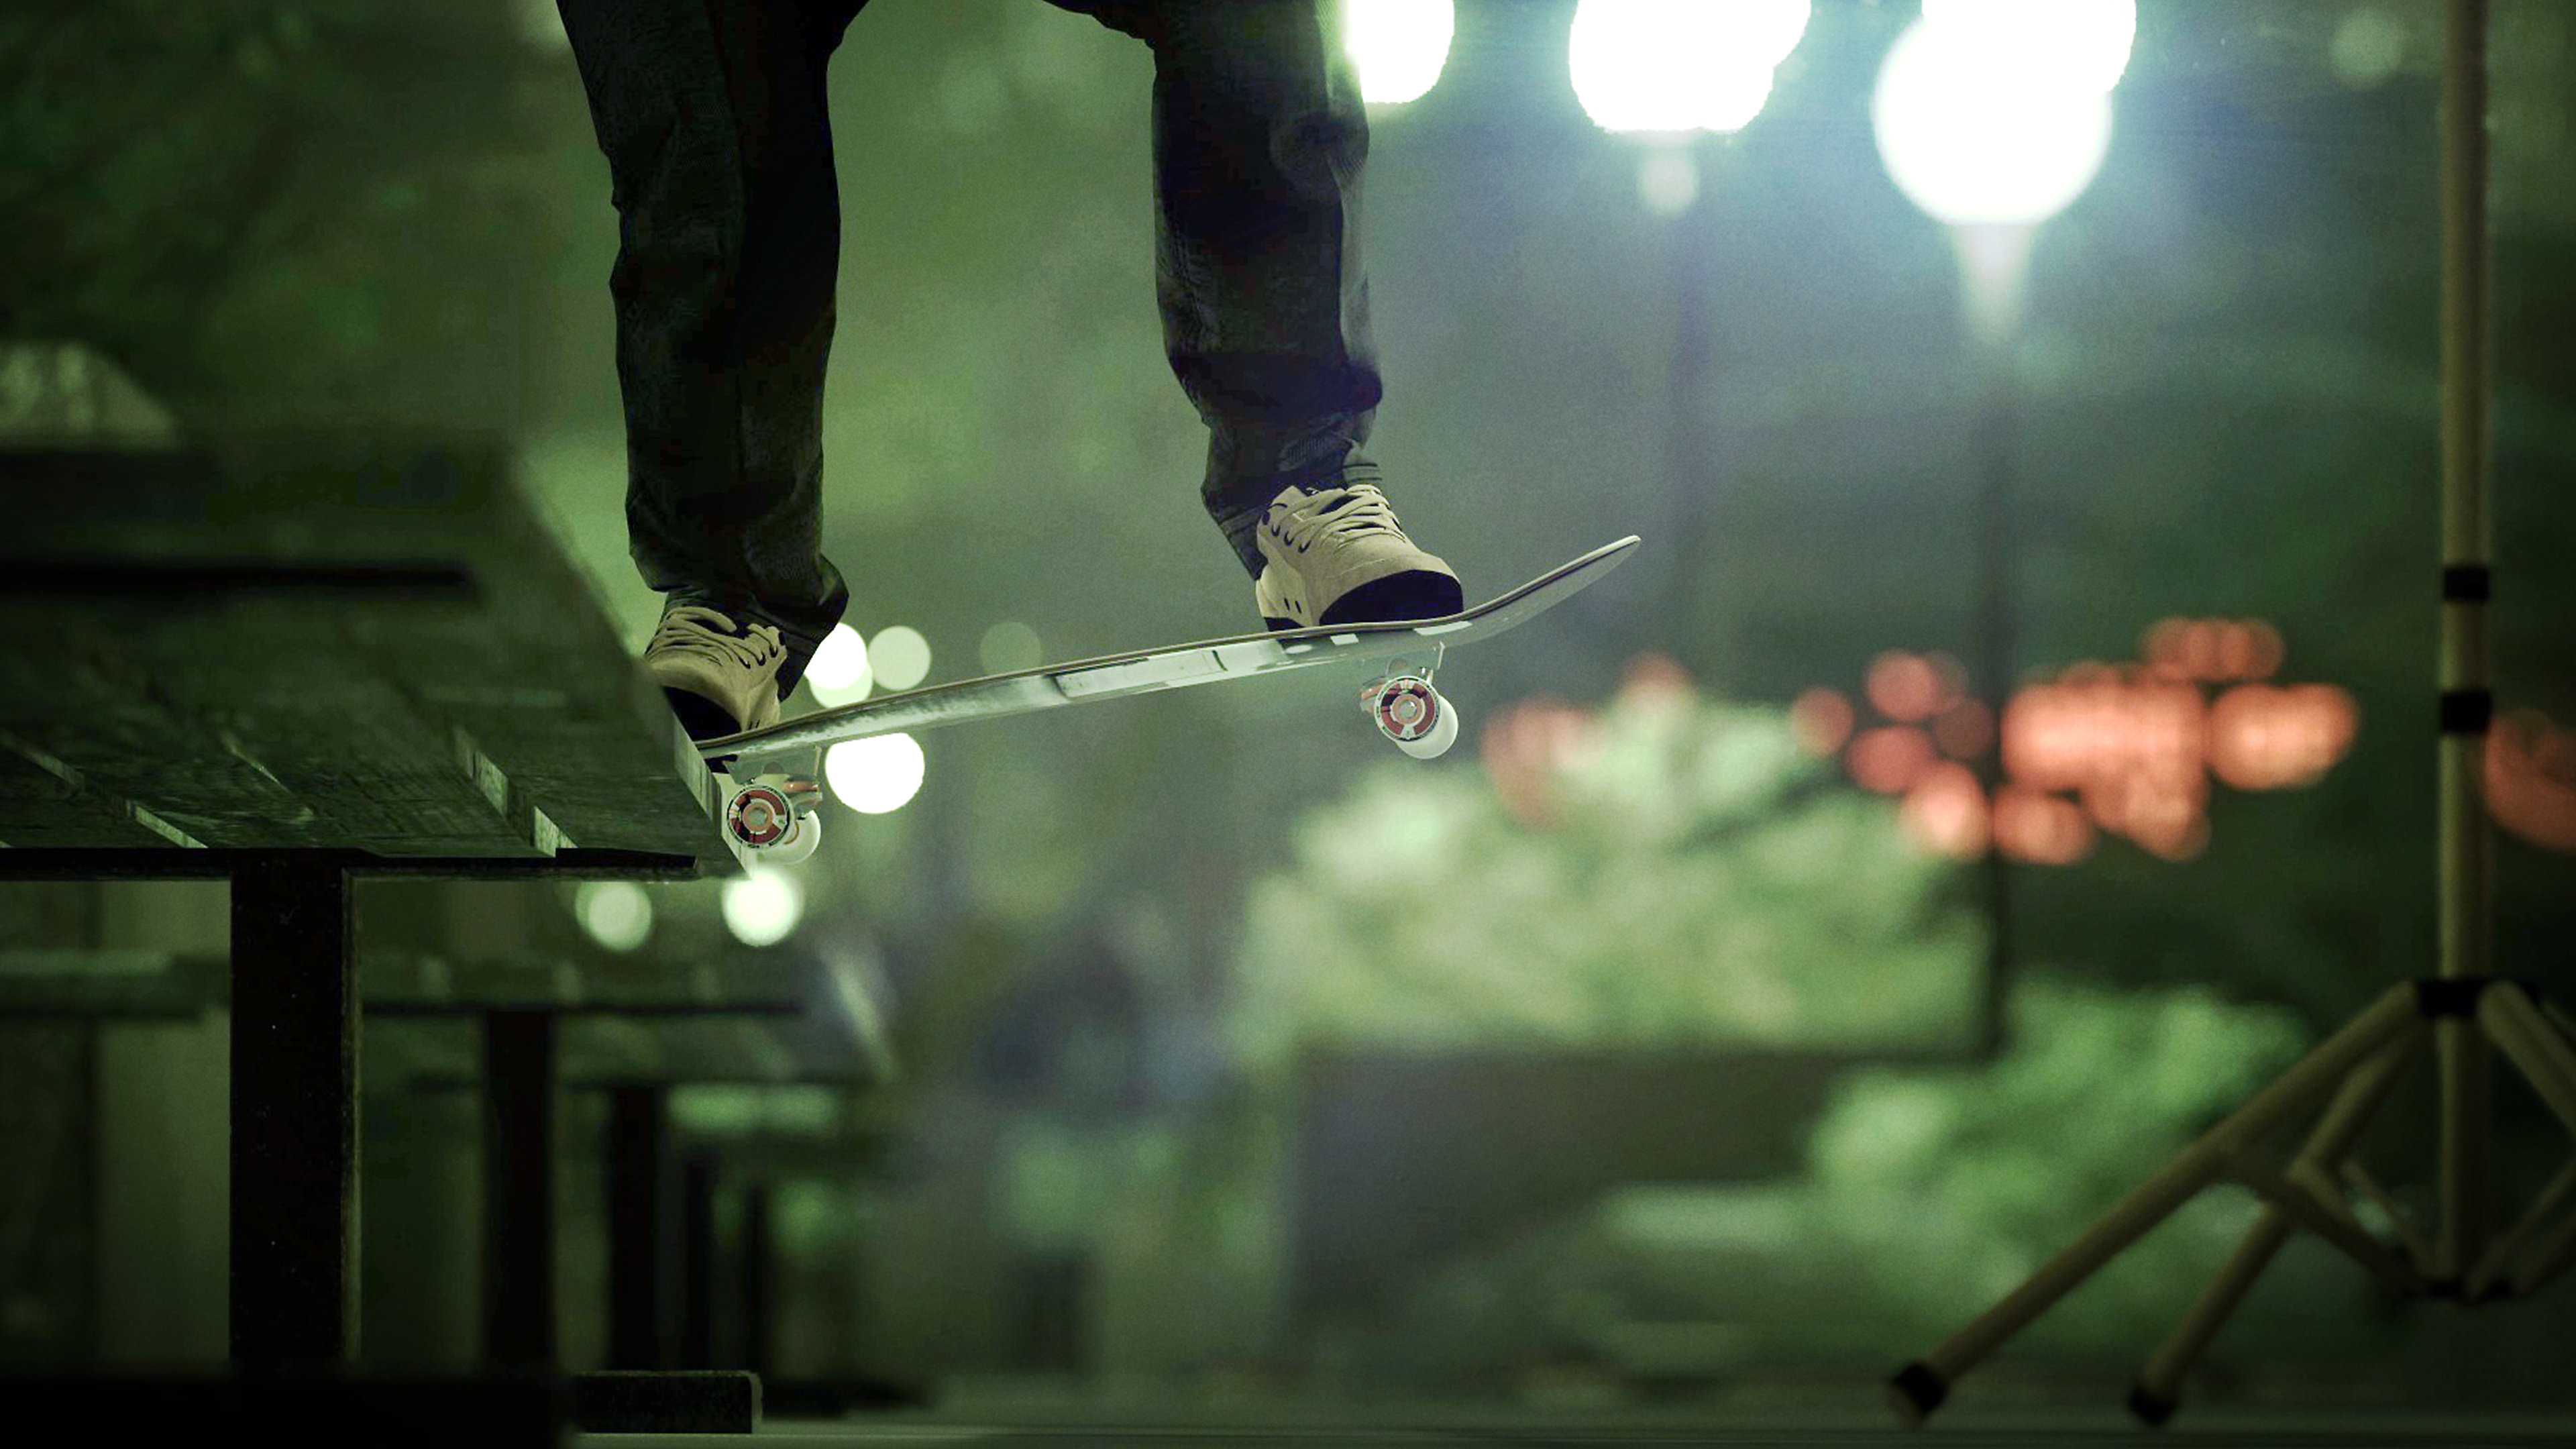 Session: Skate Sim - captura de tela mostrando skatista deslizando por um banco